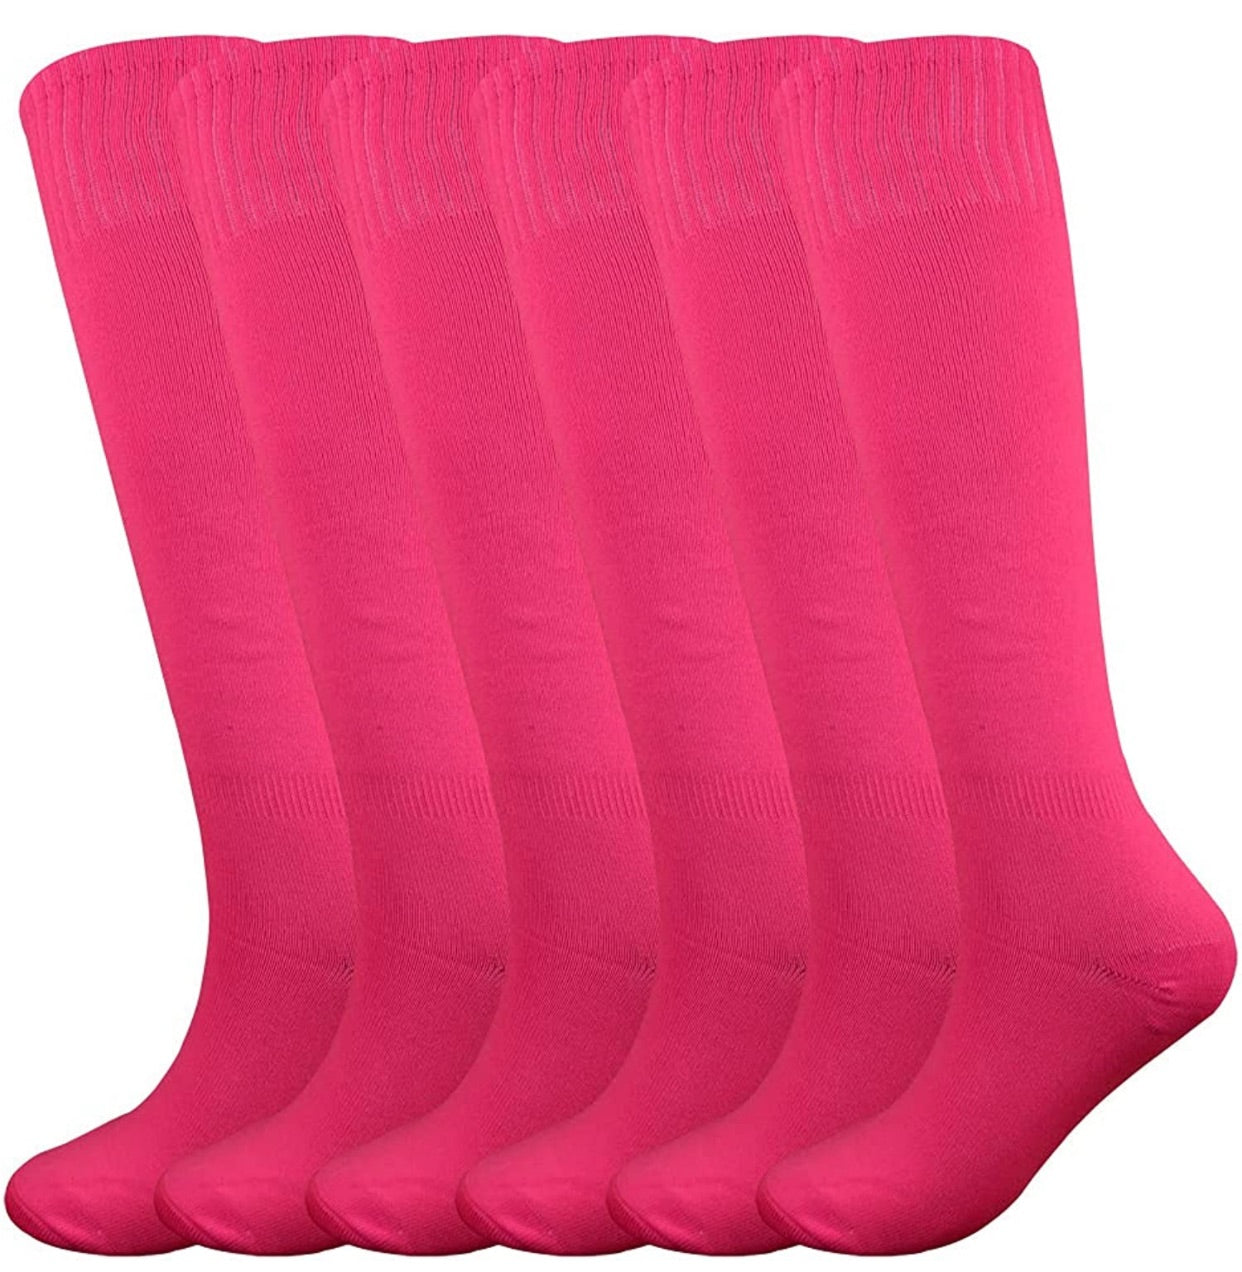 Neon pink knee high sock